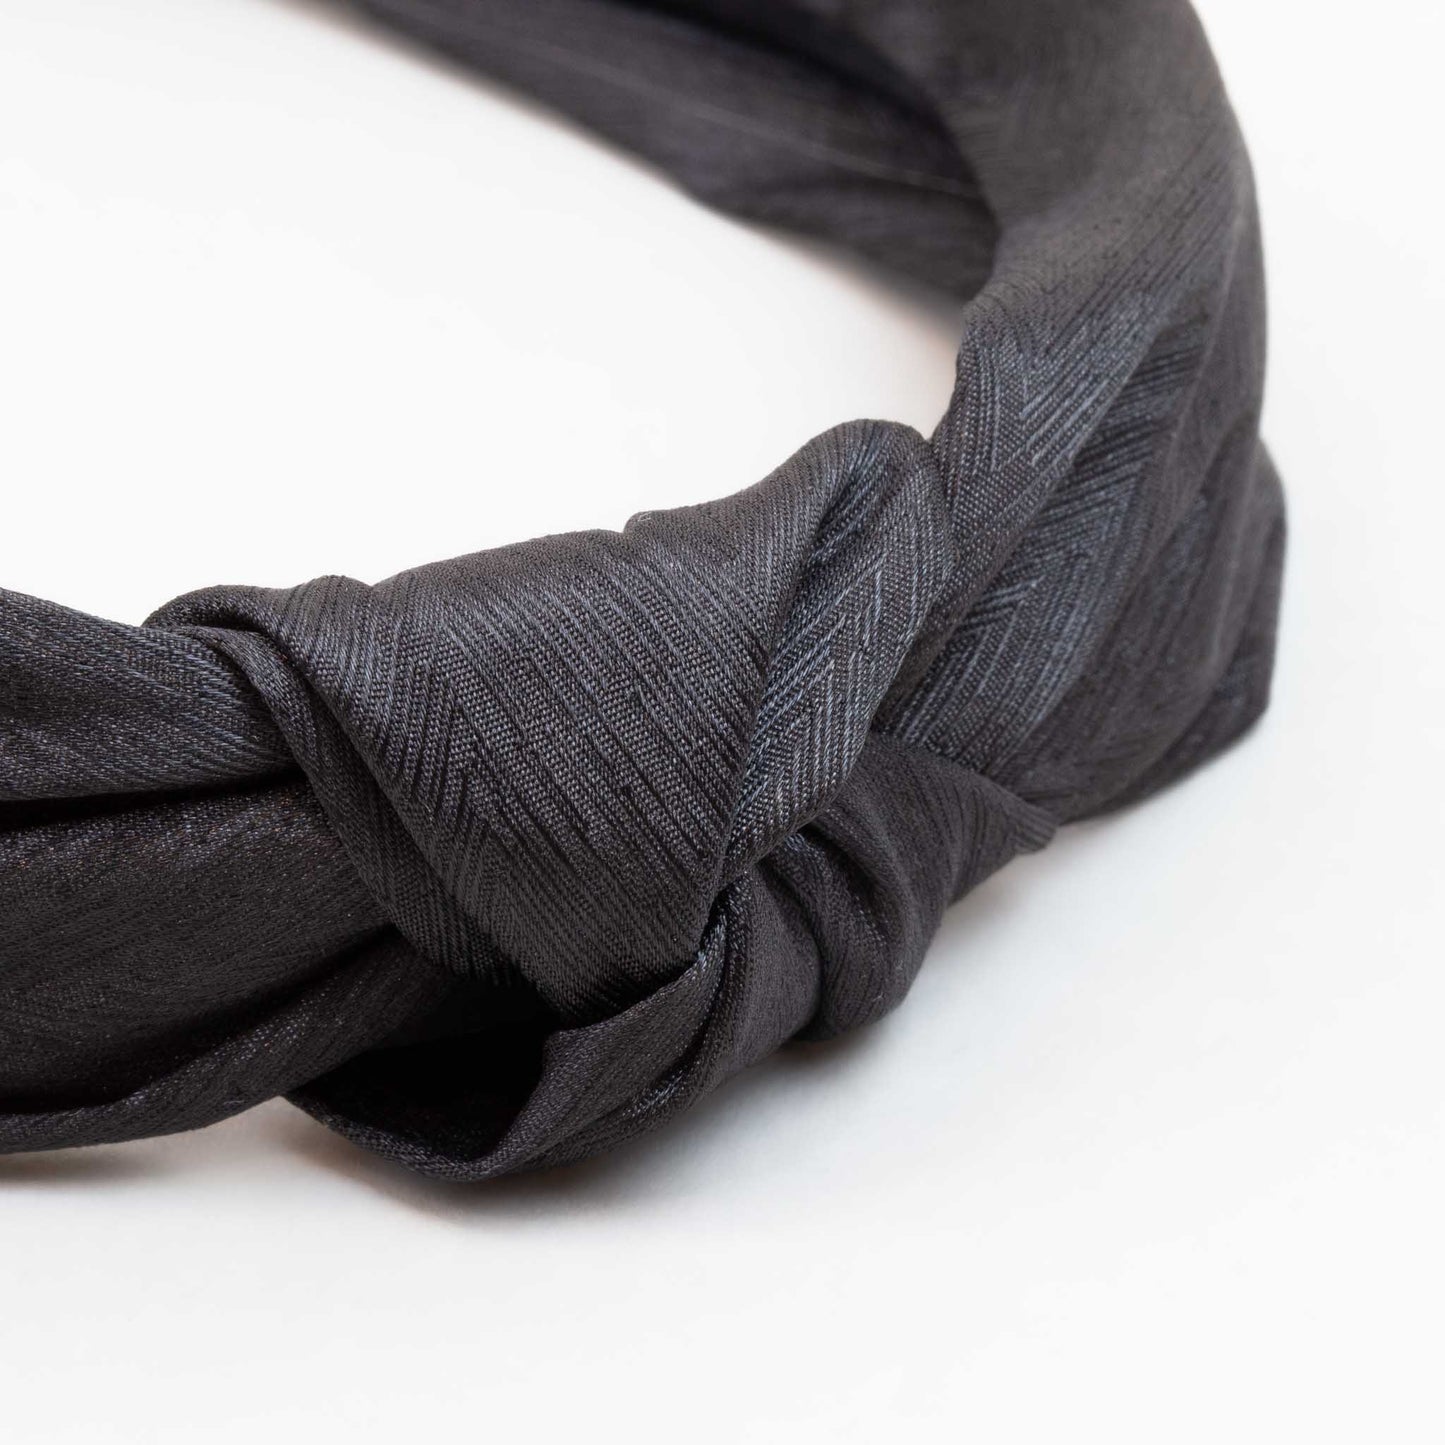 Cordelută de păr lată cu nod și material textil cu dungi fine - Negru